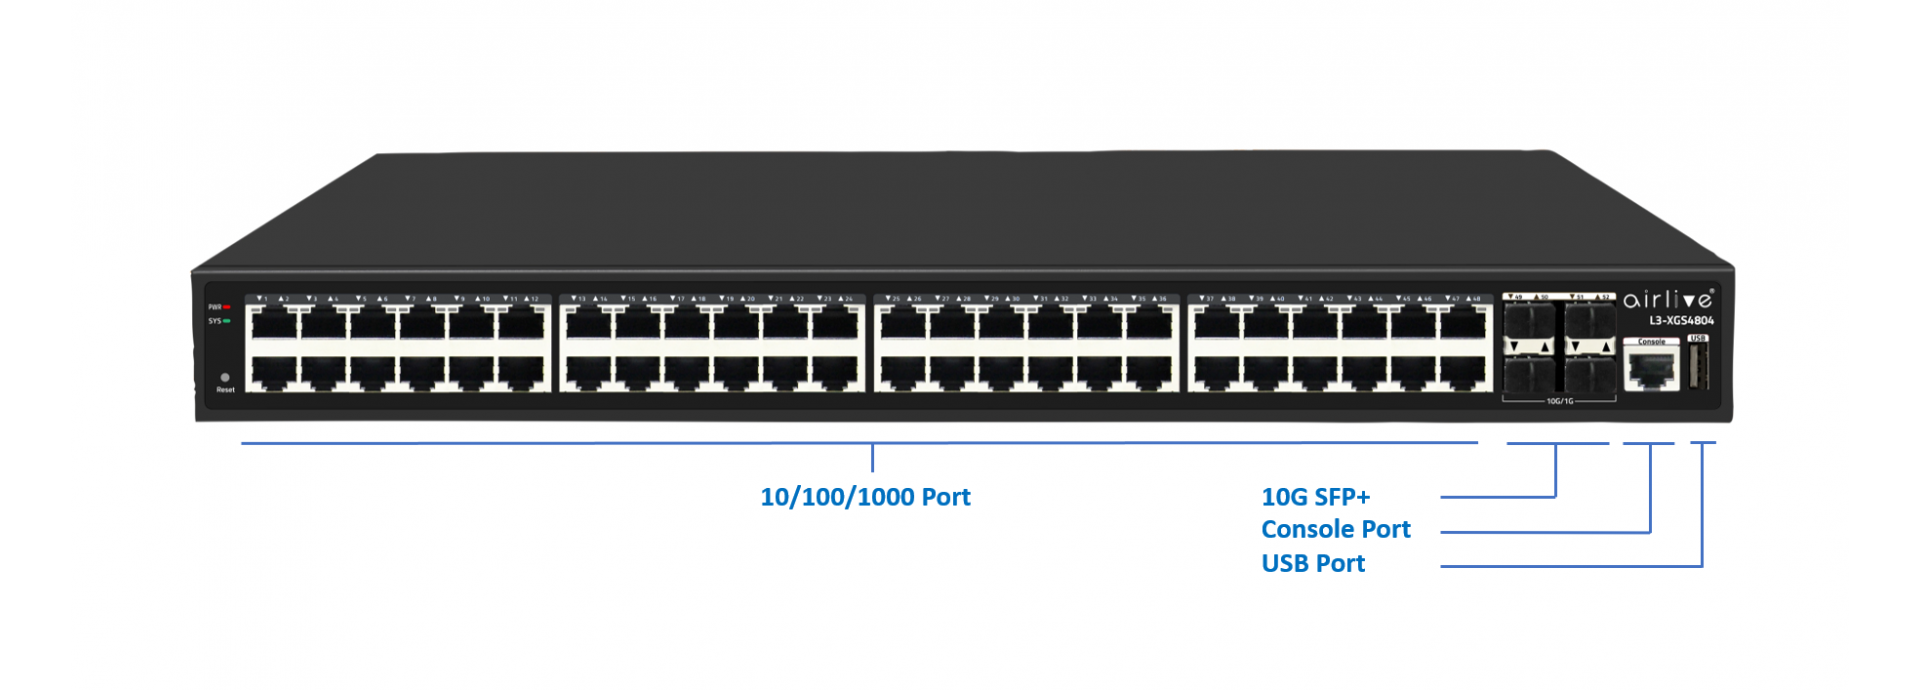 Gigabit Ethernet 16 + 2 SFP ports, L2 web-smart managed switch, rack 19